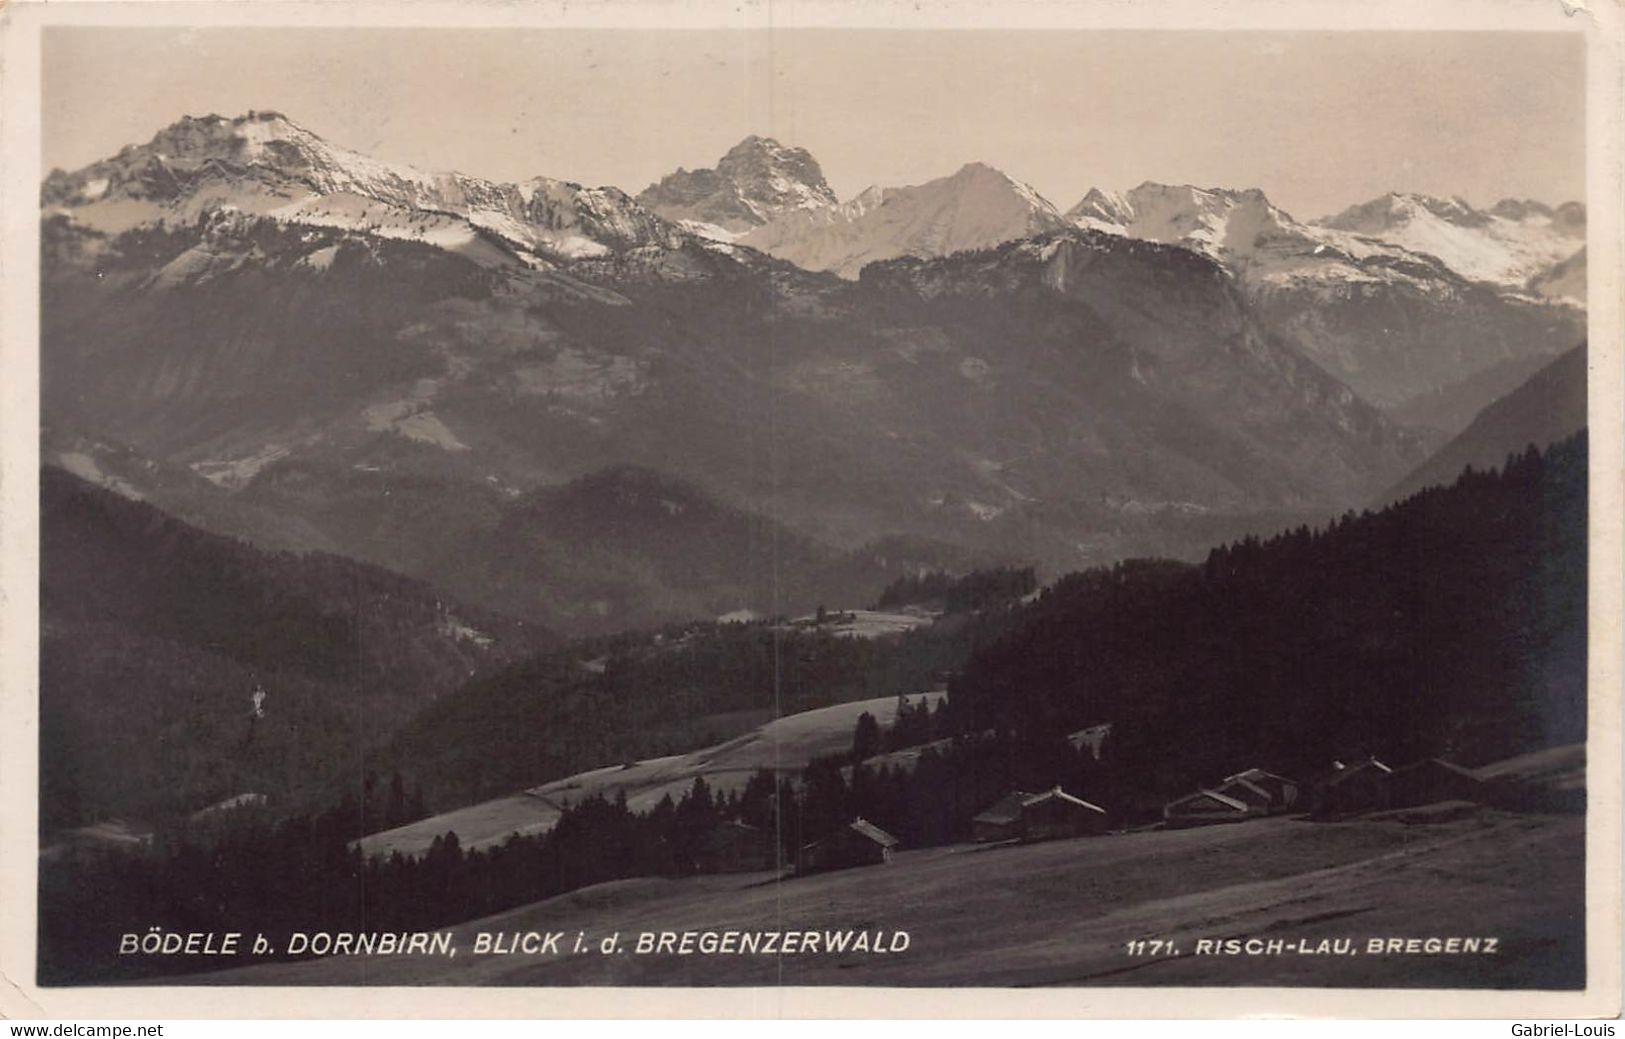 Bödele B. Dornbirn Blick I. D. Bregenzerwald Risch-Lau Bregenz - 1931 - Dornbirn